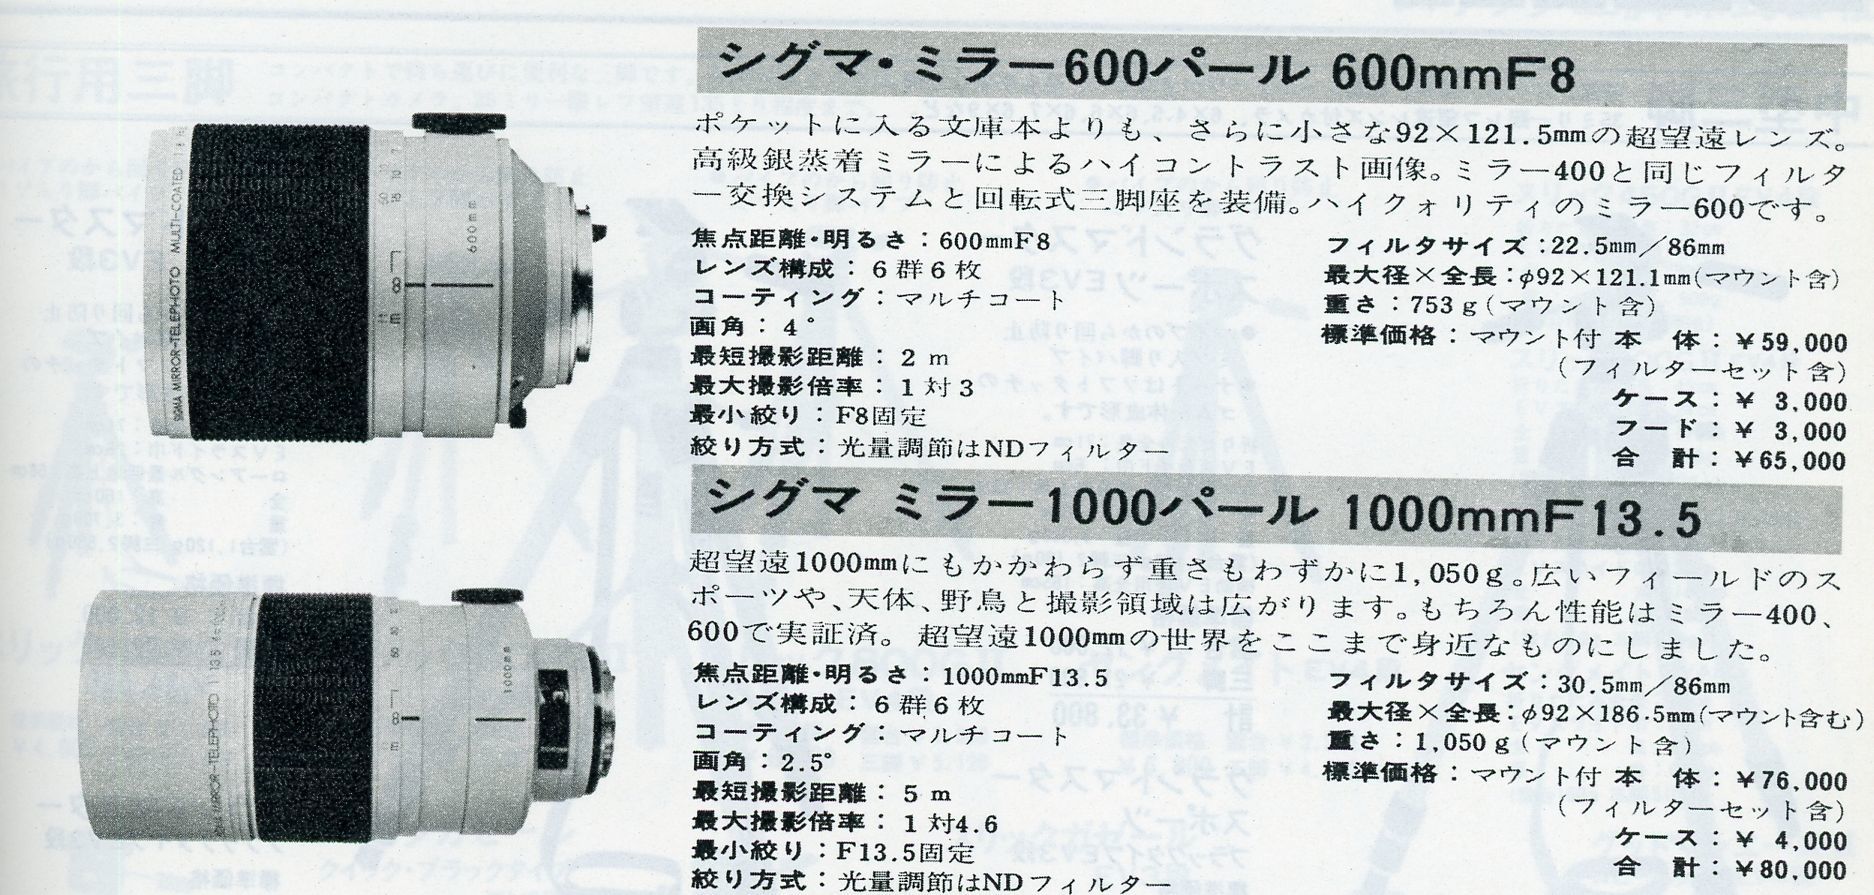 SIGMA 600mm/f8 PENTAXマウント アダプター使用でいろいろ使用